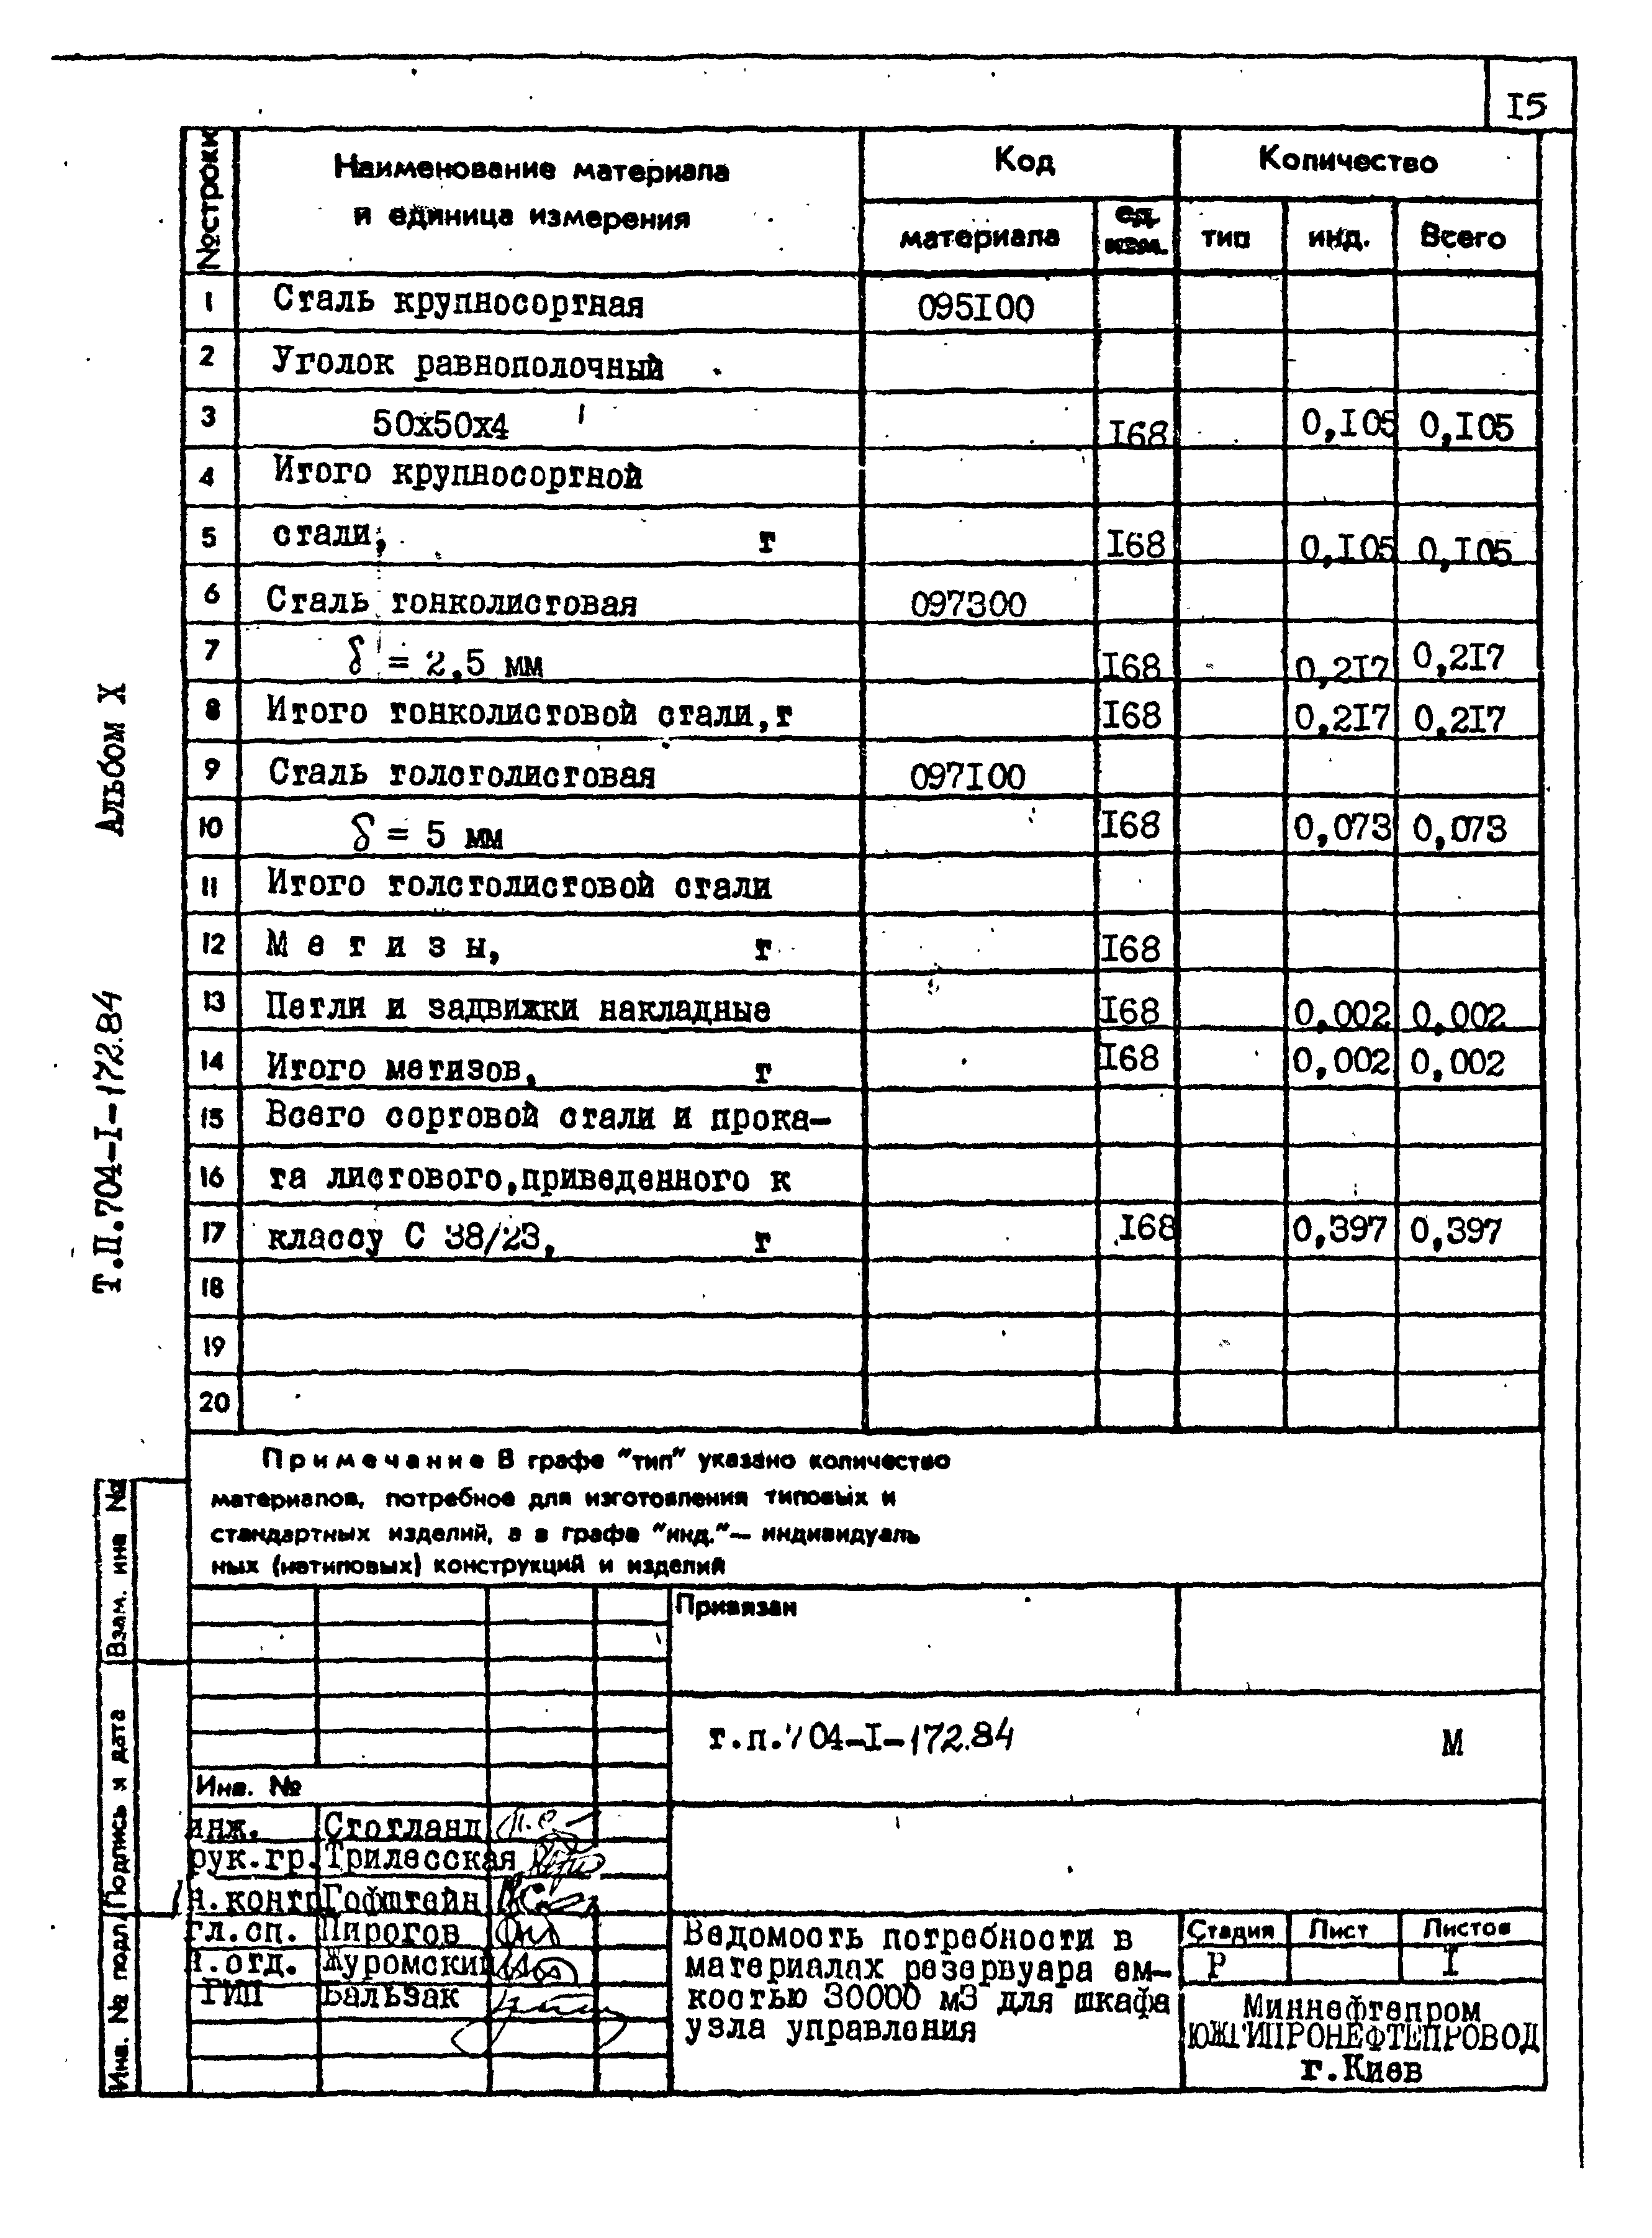 Типовой проект 704-1-172.84